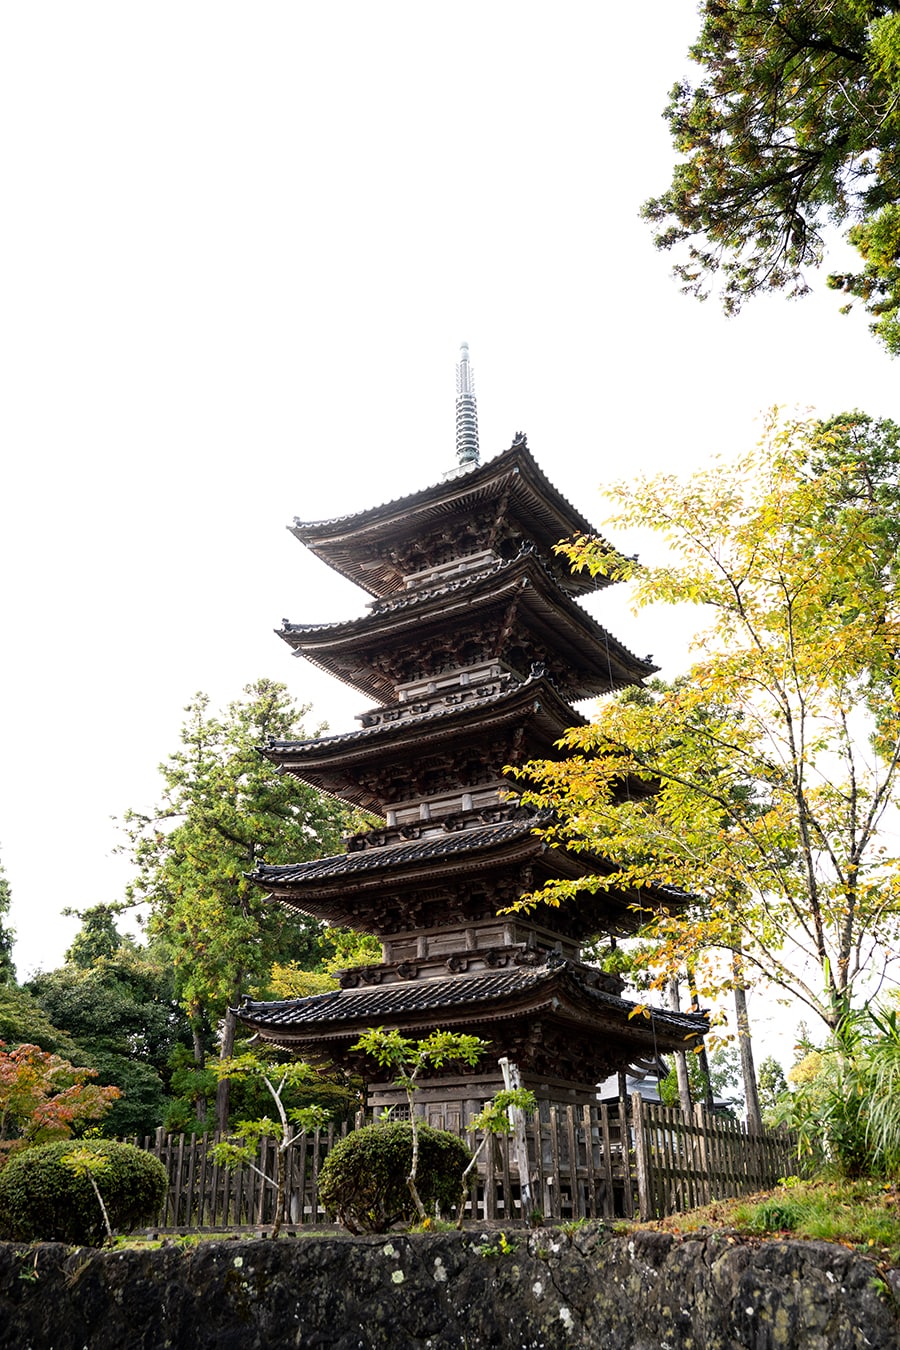 相川の宮大工棟梁が親子二代、30年がかりで完成させたと伝わる五重塔。建築様式は和様の三間五重塔婆で全高約24m。